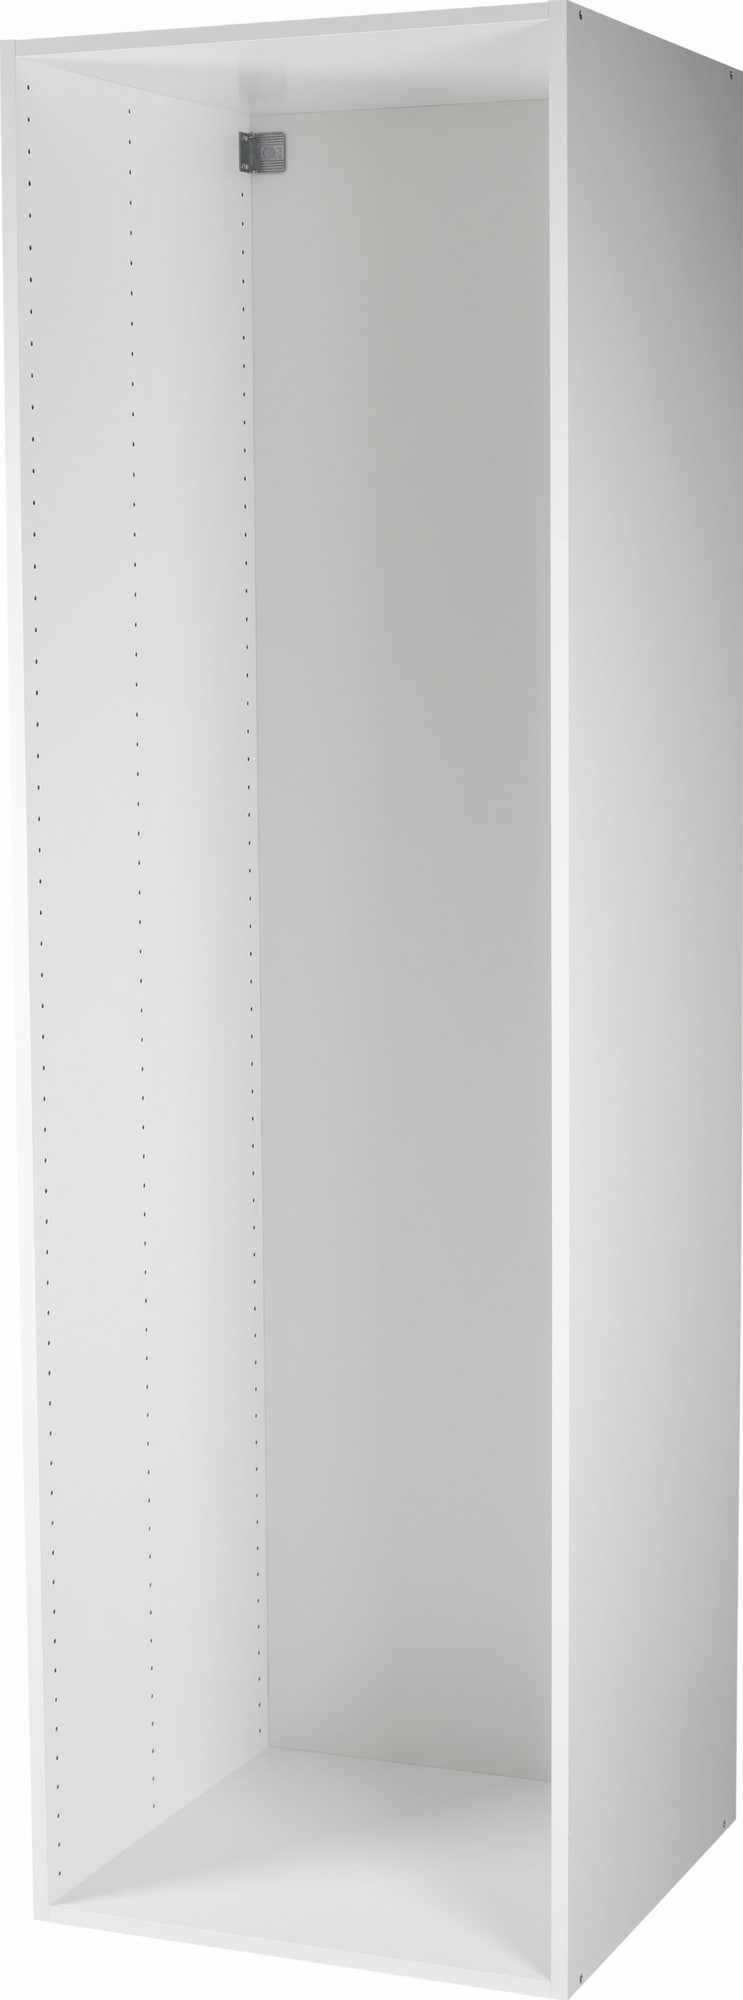 Epoq korkeakaappi 60x217 (valkoinen) - Gigantti verkkokauppa